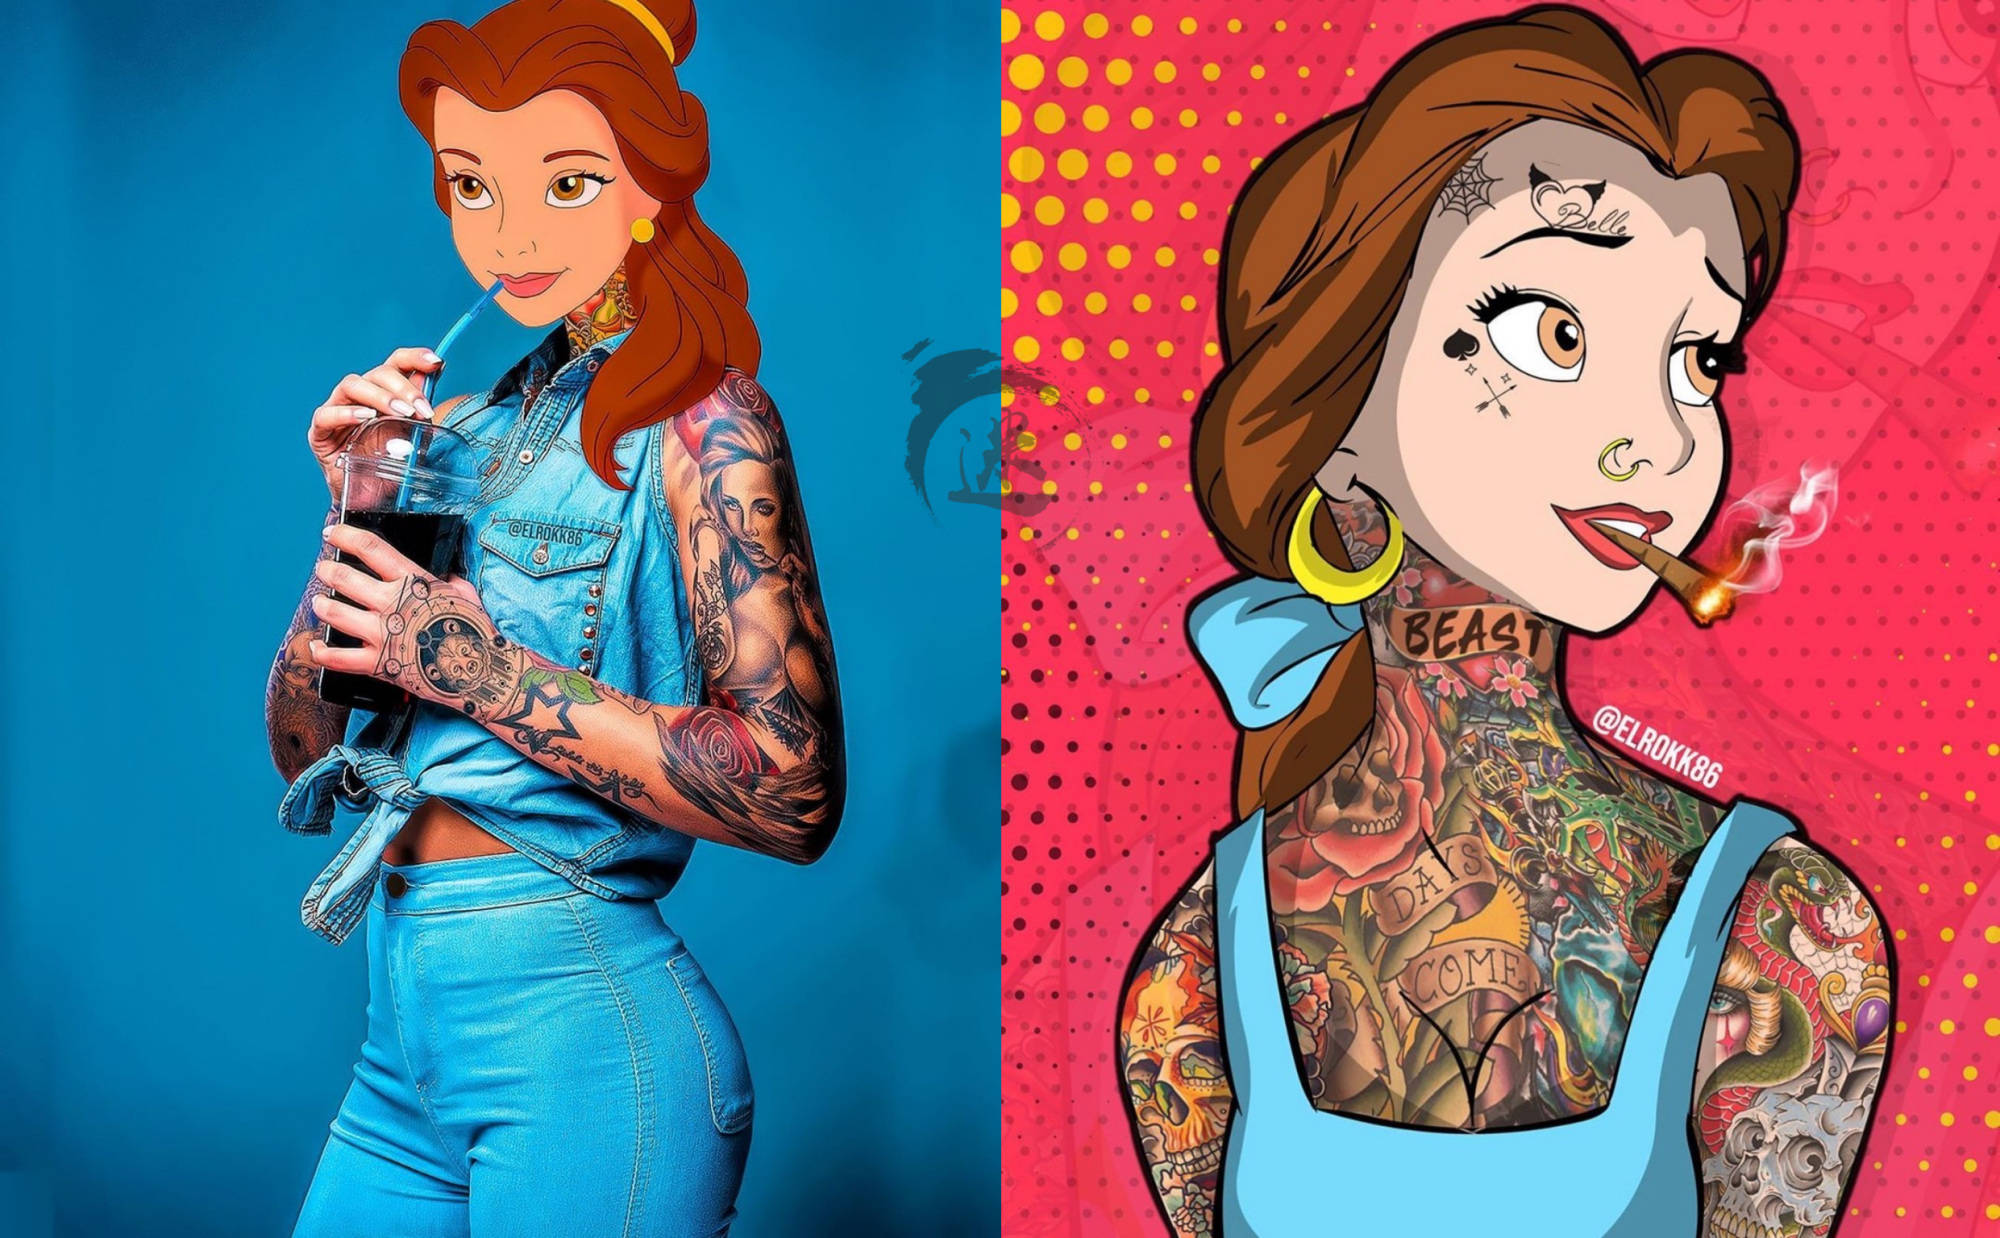 原创"坏女孩"画风的迪士尼公主,纹身香烟少不了,家长:必须举报!